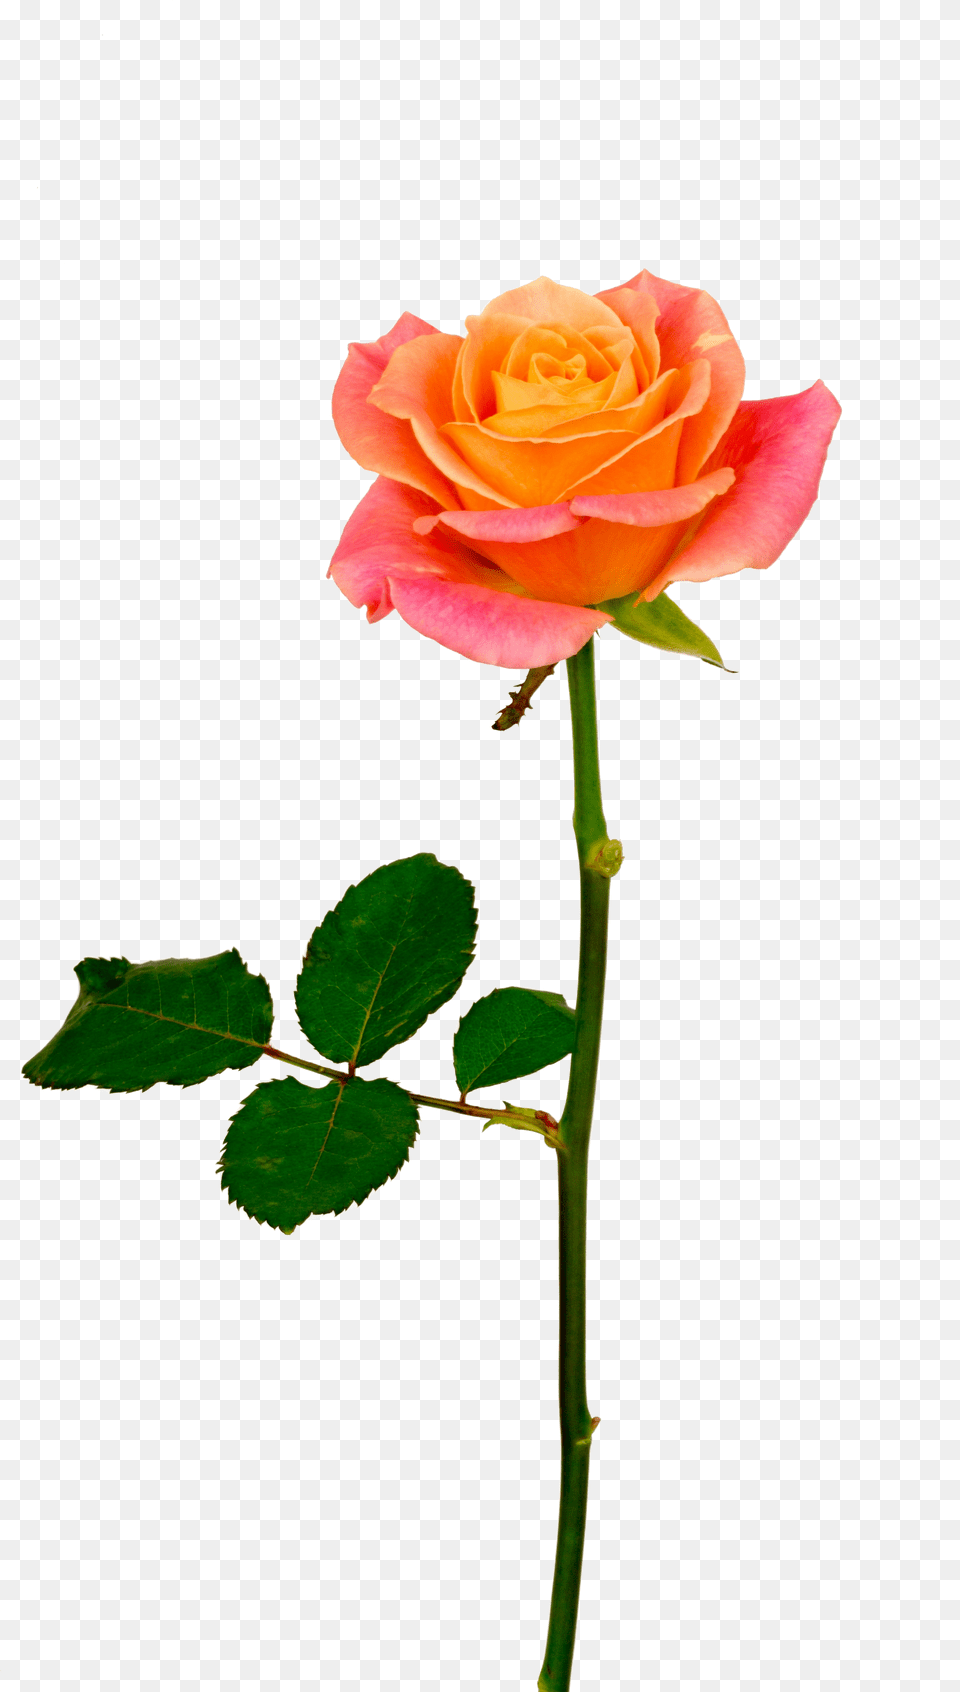 Background V50 600x736 S Resolution Orange Roses Orange Rose With Stem, Flower, Plant Free Png Download